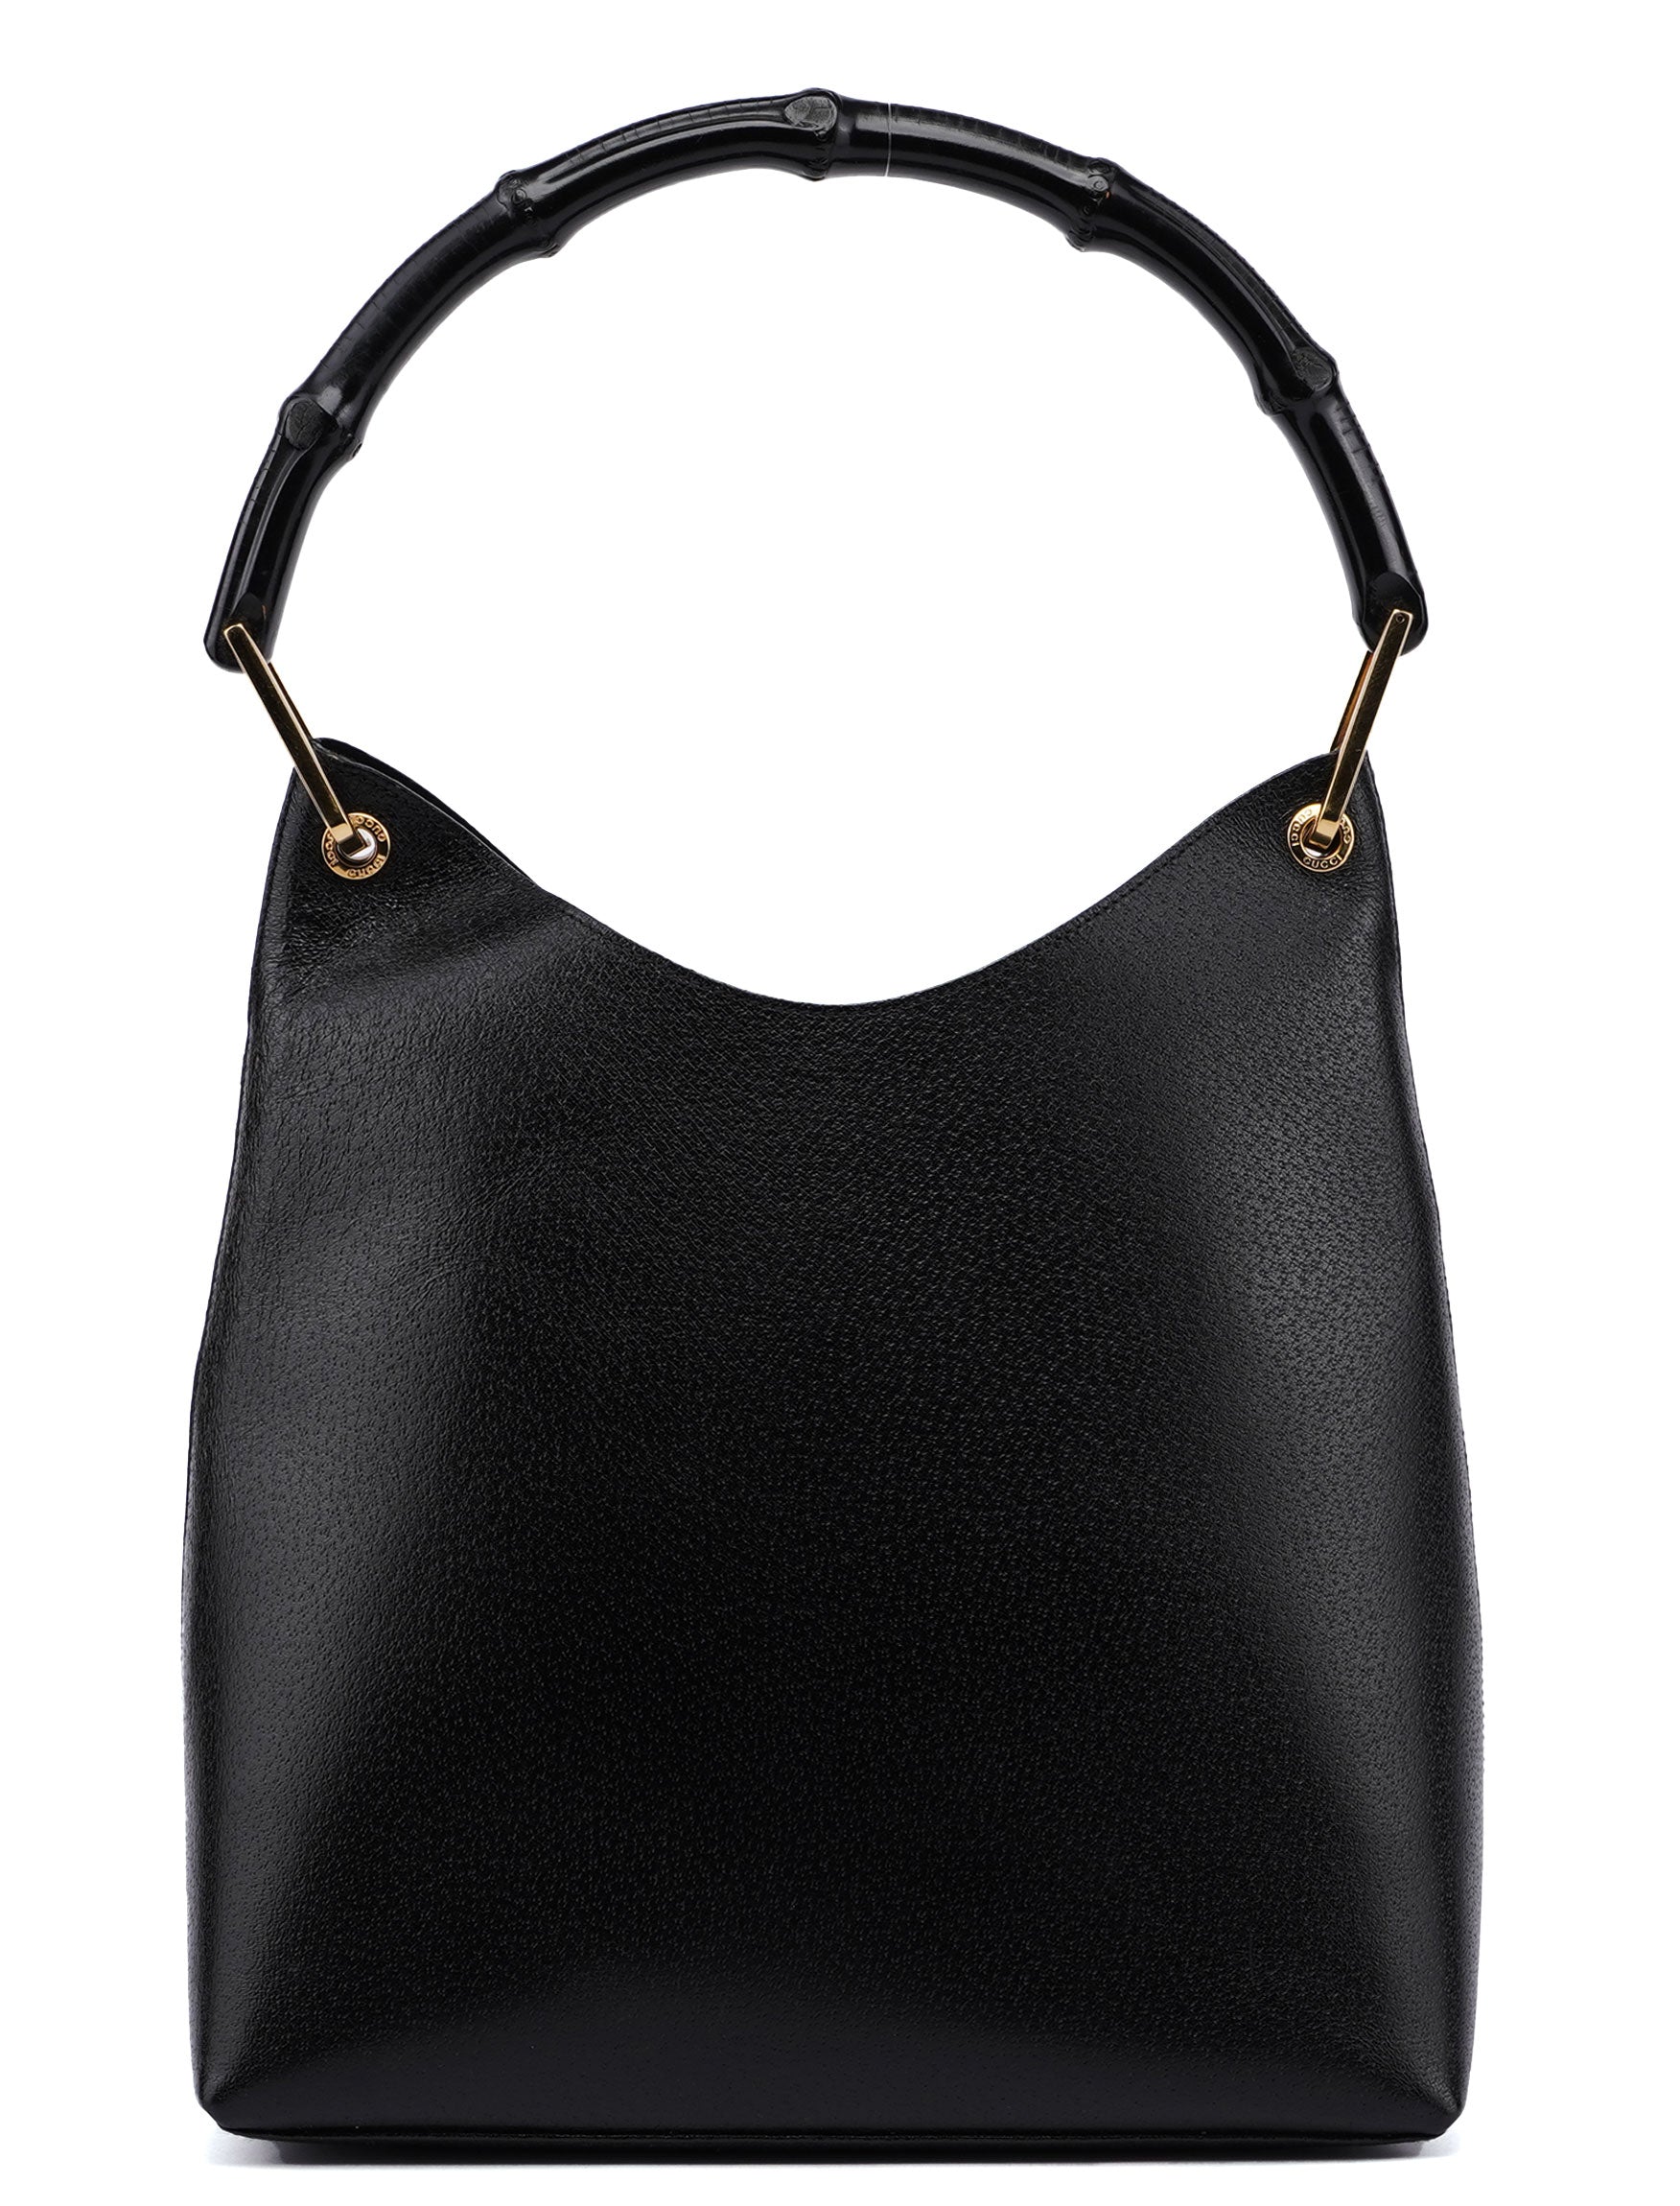 Gucci Black Leather Bamboo Hobo Shoulder Bag